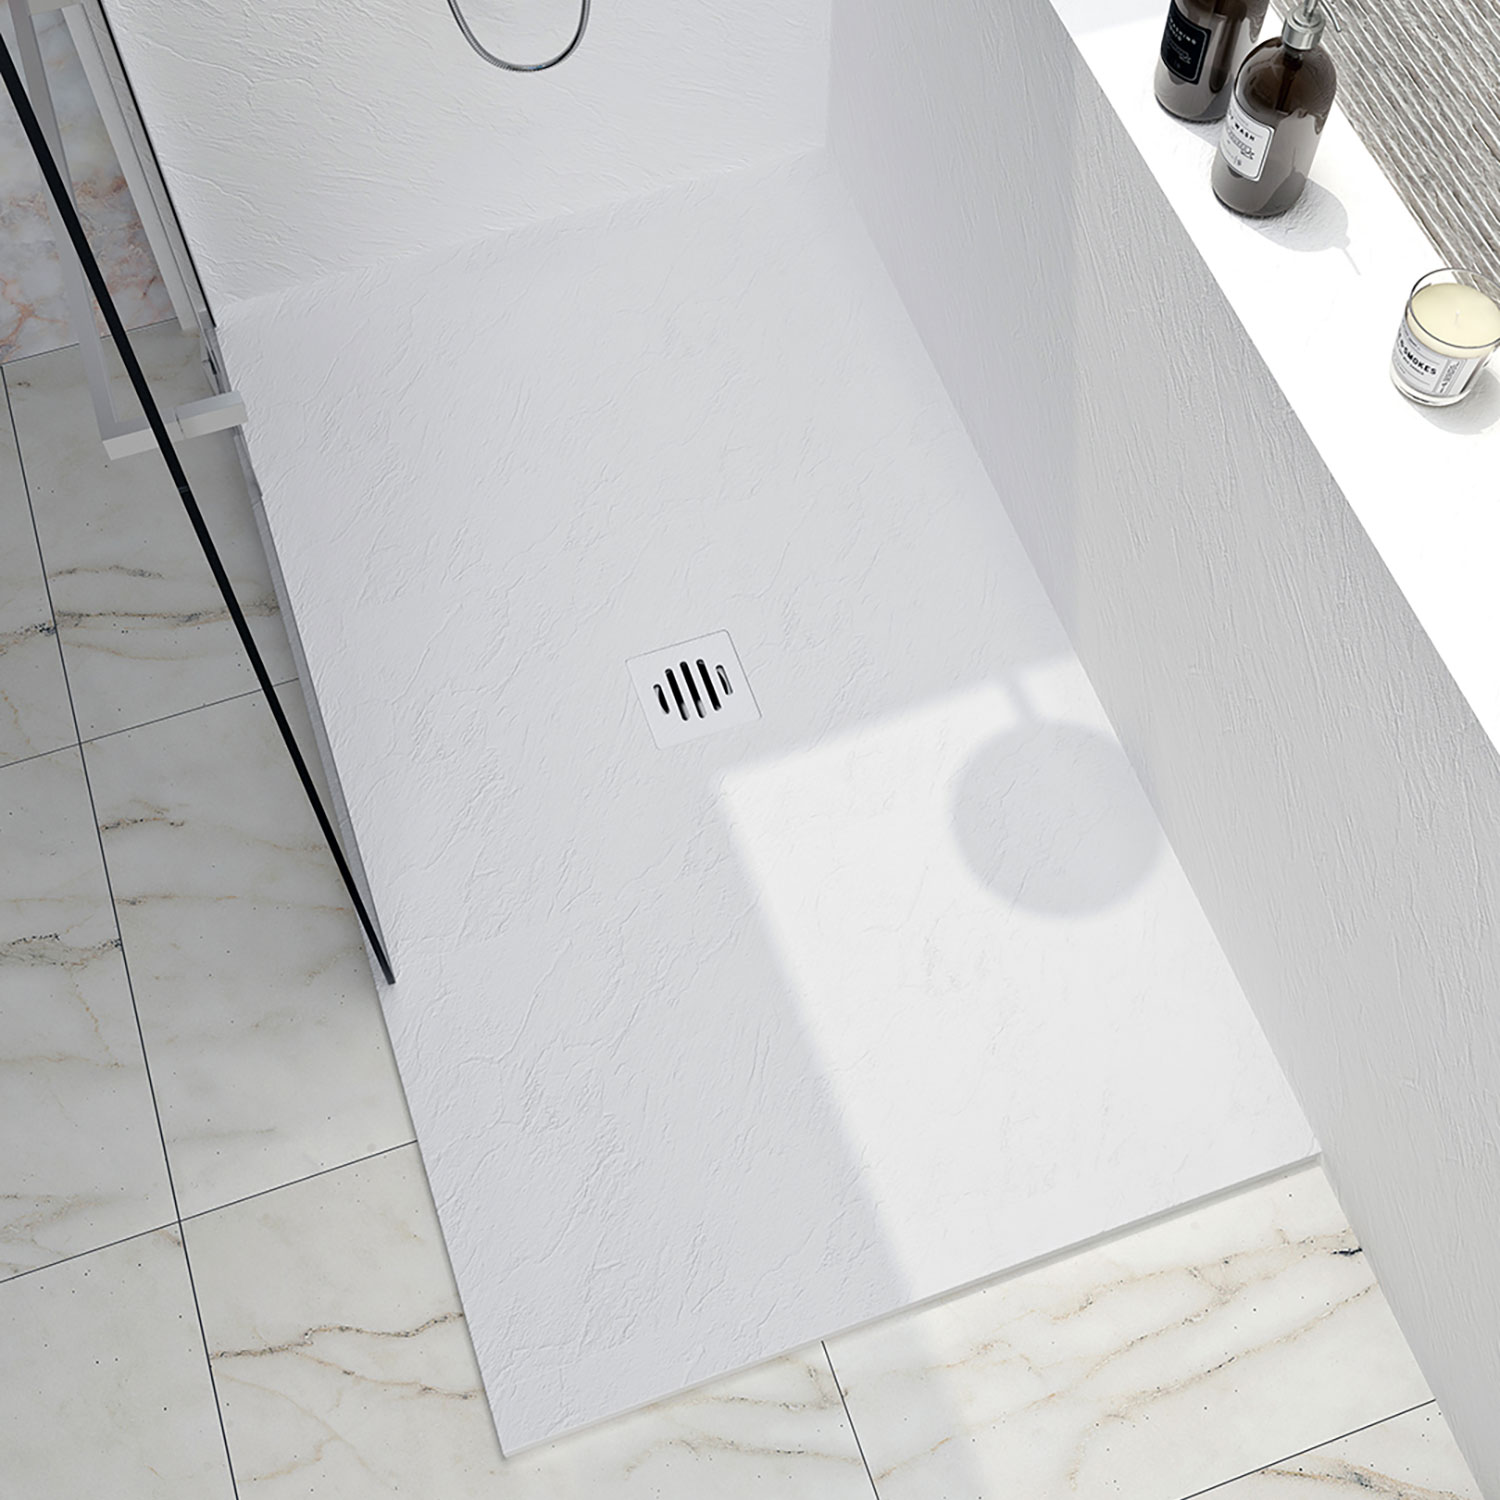 Shower base Slate 48 x 32, custom-made tile flange installation, in white